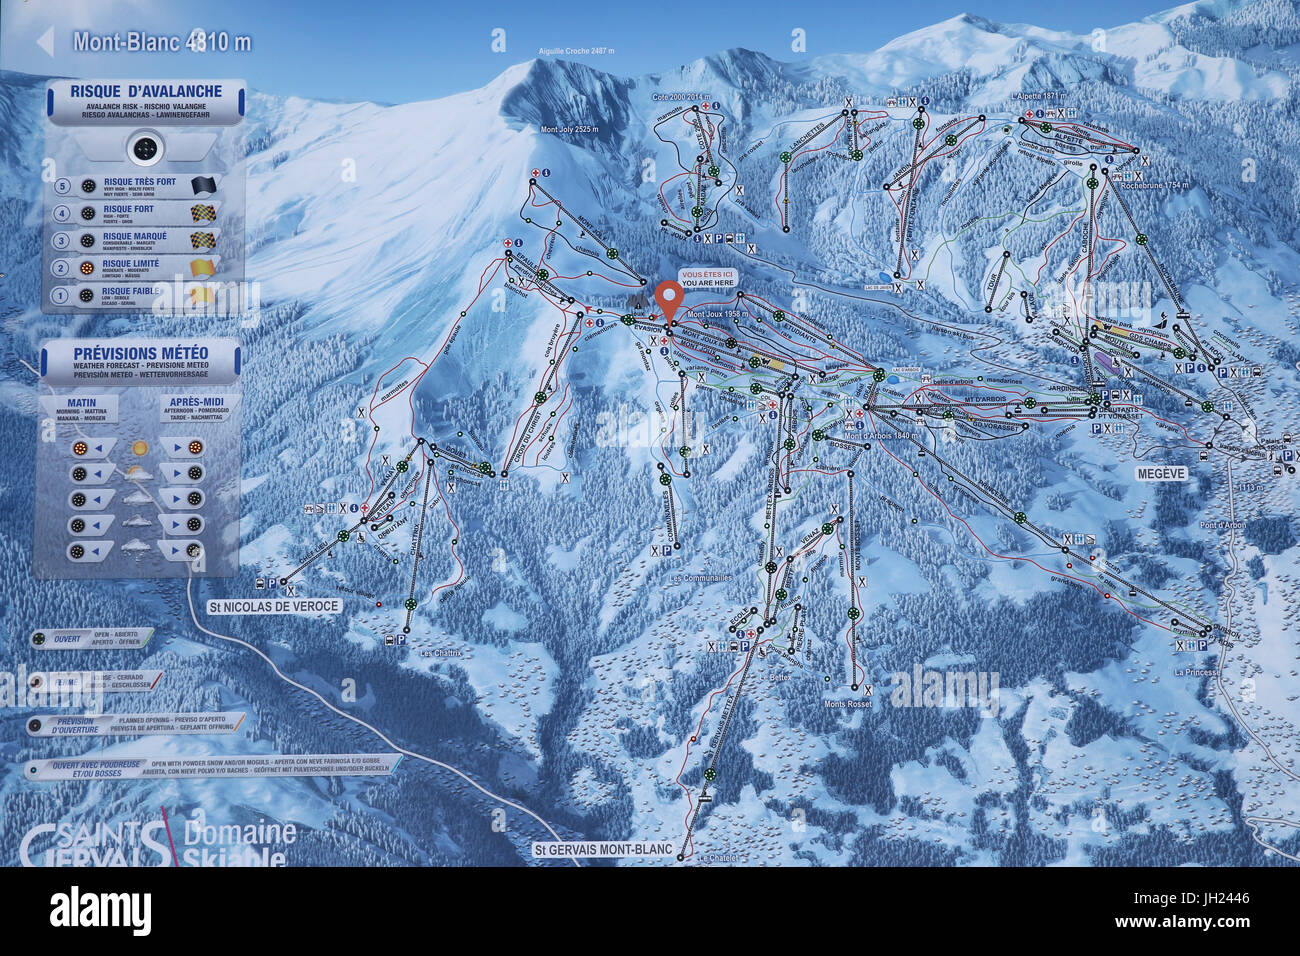 Sulle Alpi francesi. Del massiccio del Monte Bianco. Mappa delle piste da sci. La Francia. Foto Stock